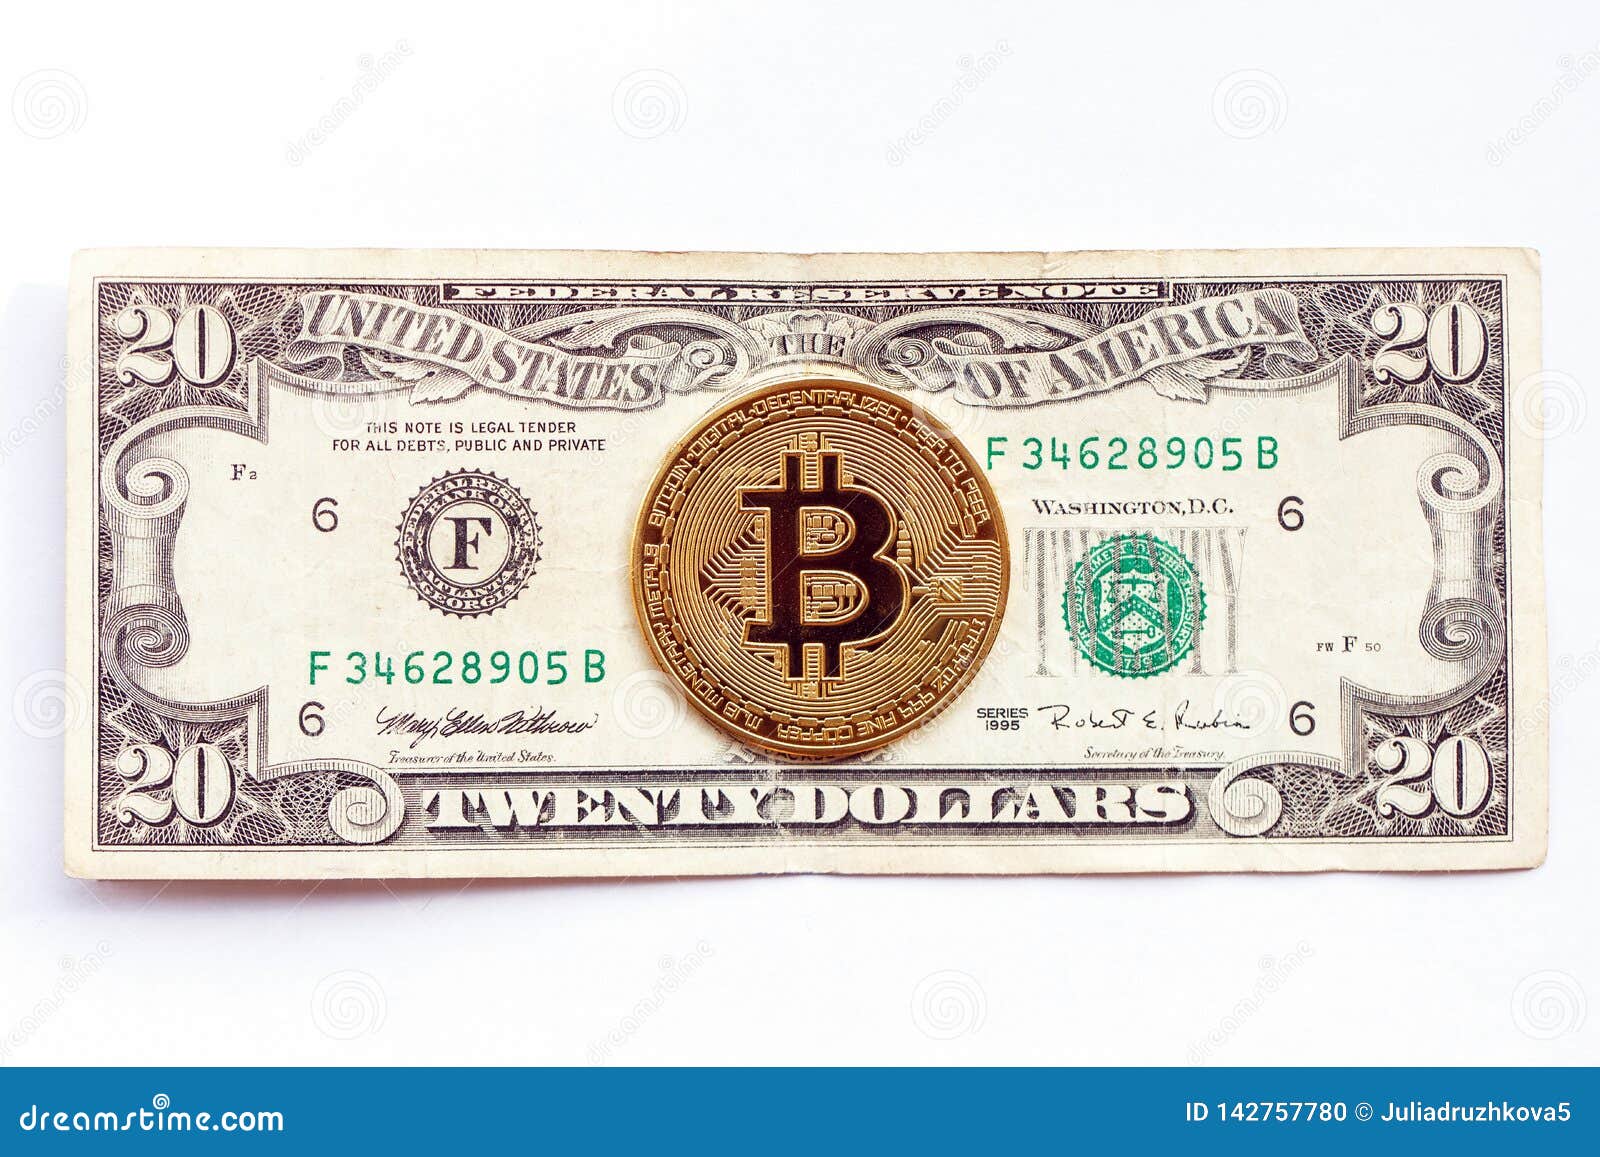 puteți tranzacționa bitcoin pentru bani